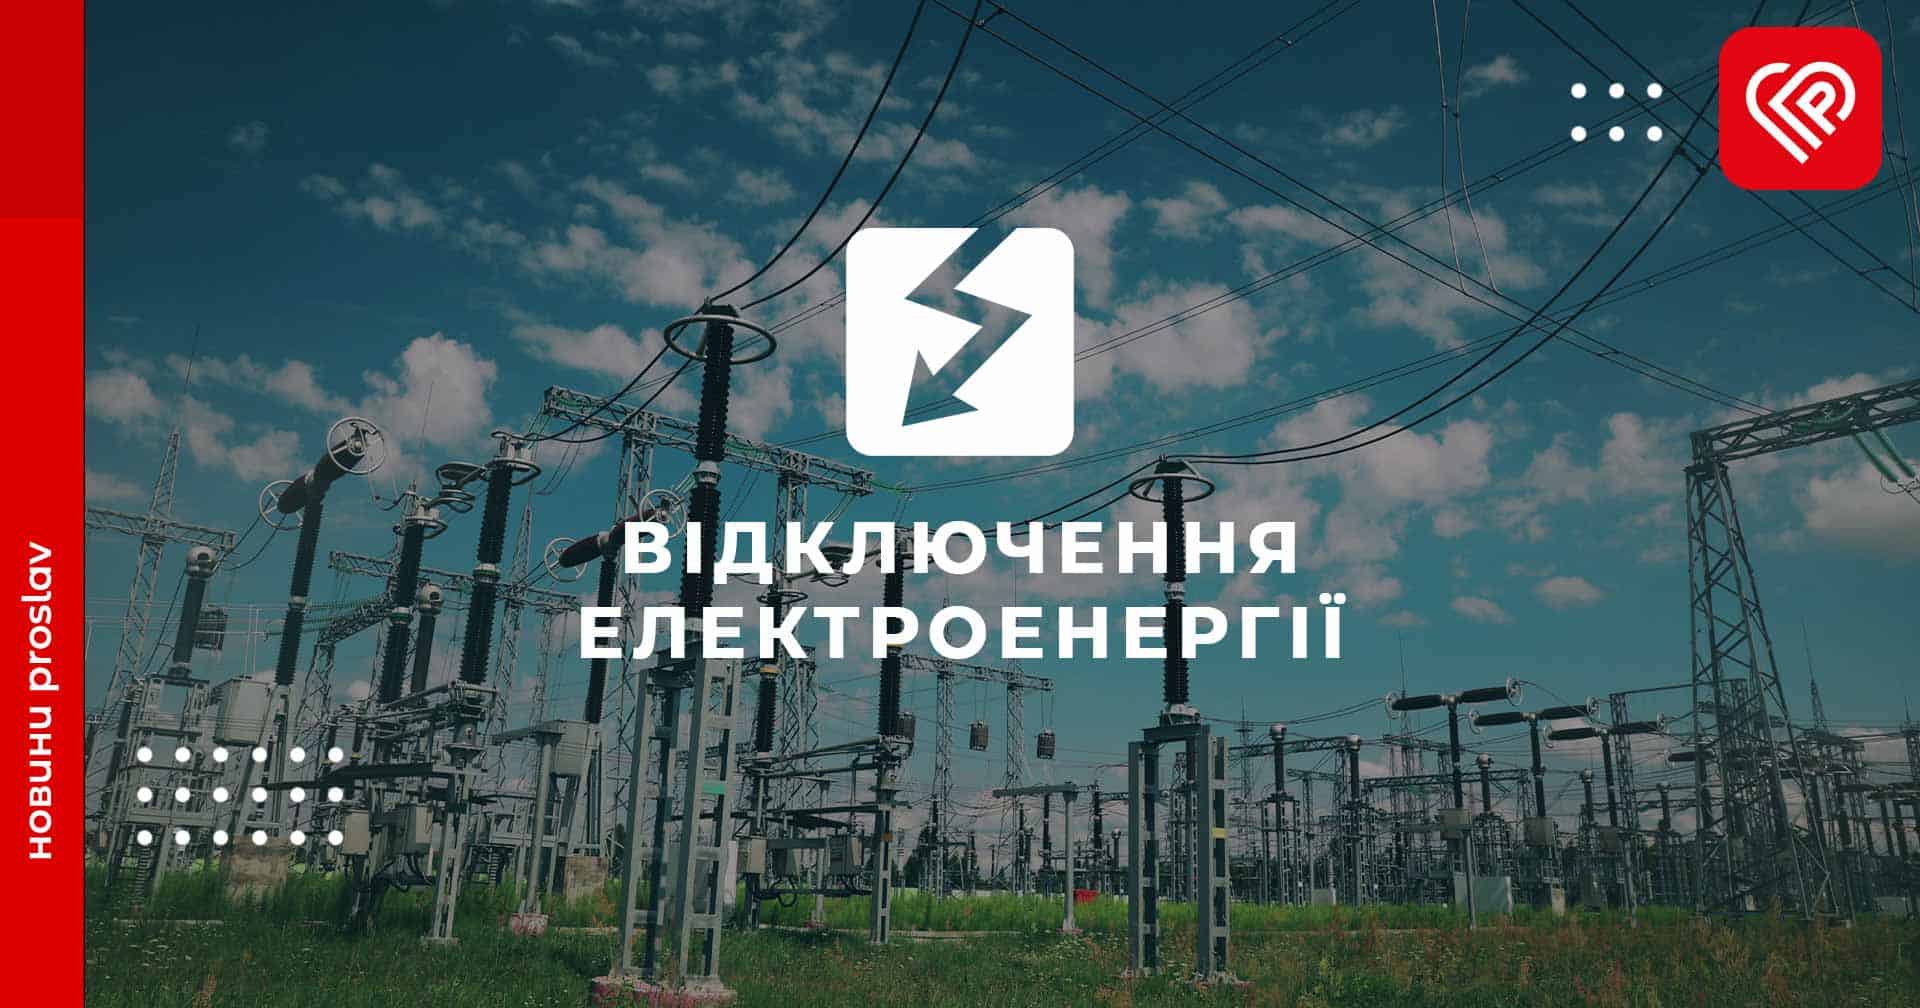 На початку липня на Переяславщині будуть планові відключення електроенергії: перелік населених пунктів та графік